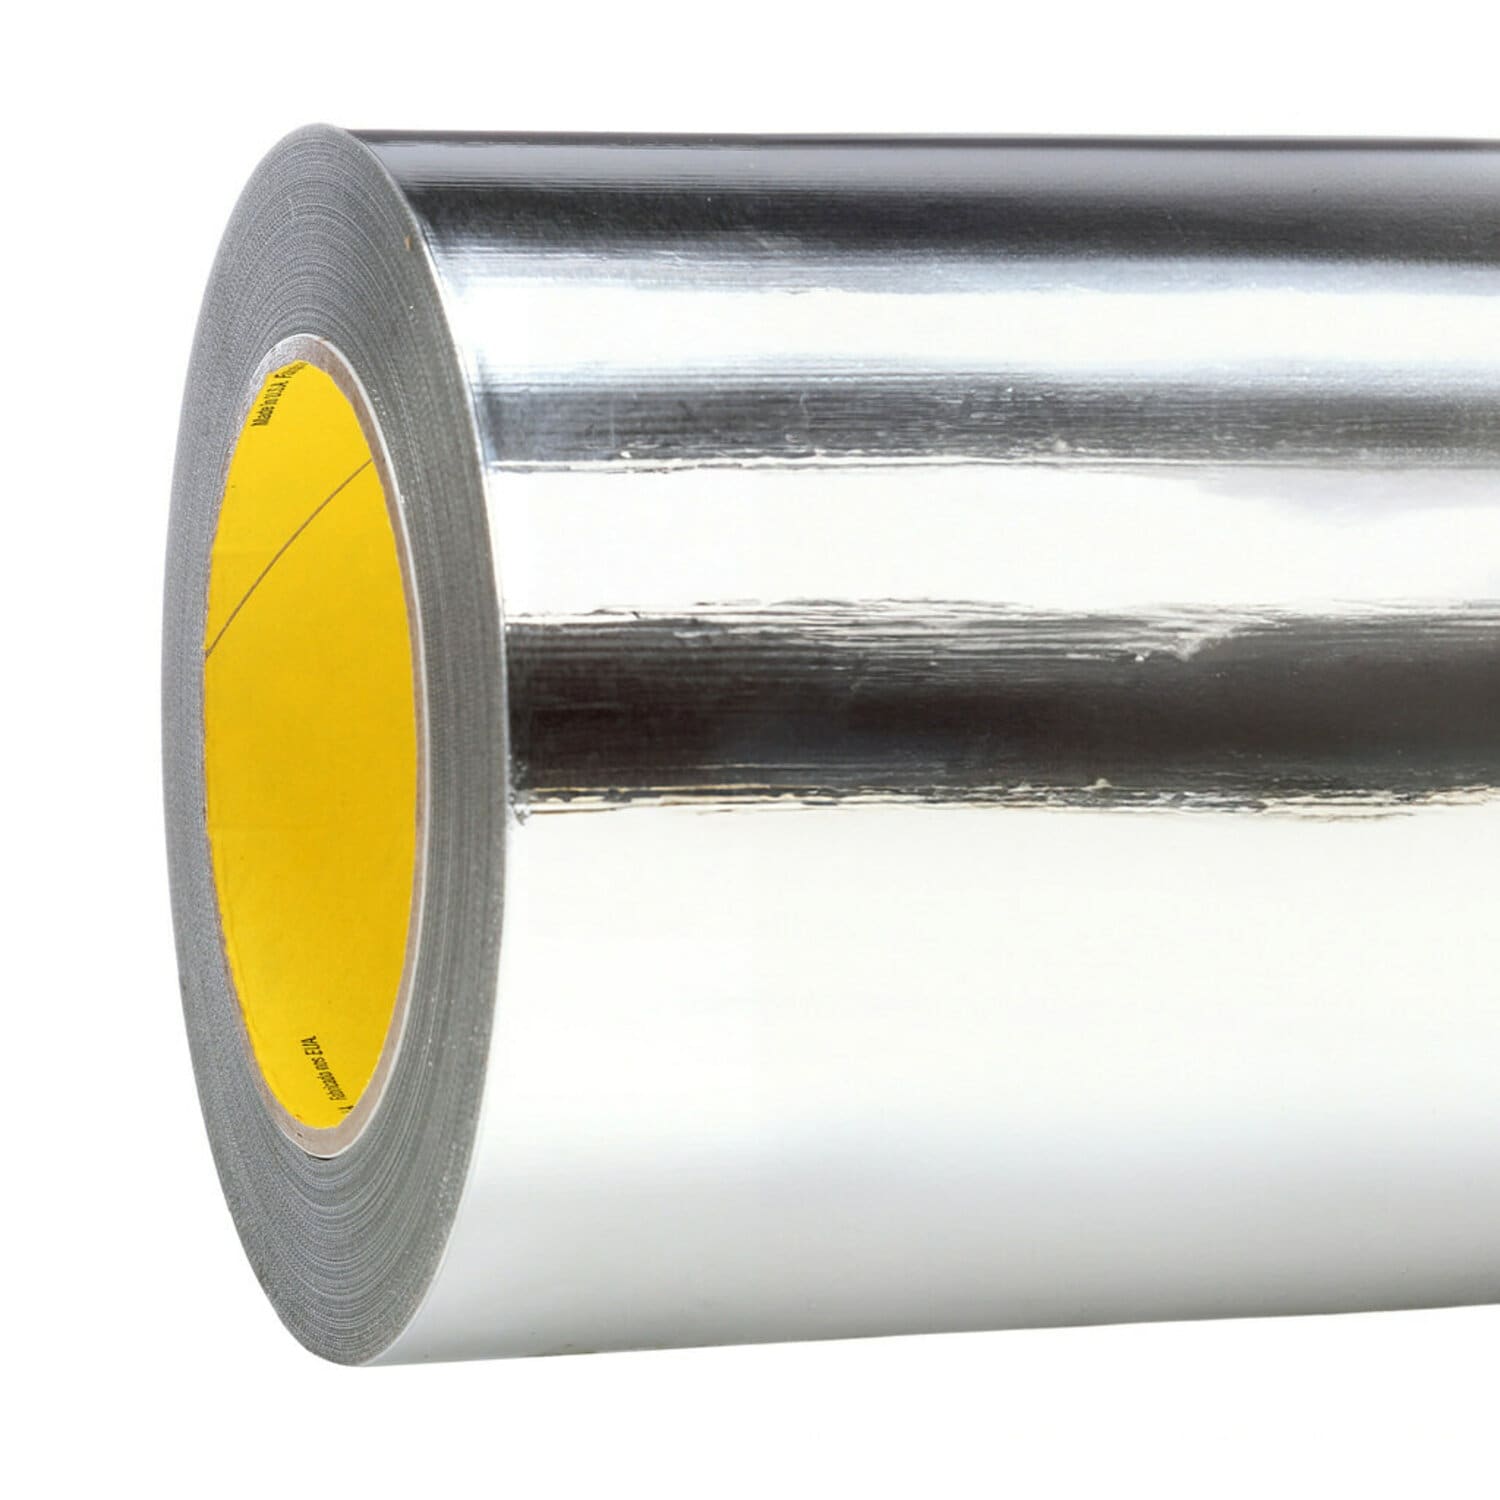 7100077775 - 3M High Temperature Aluminum Foil Tape 433, Silver, 23 in x 60 yd, 3.6
mil, 1 roll per case